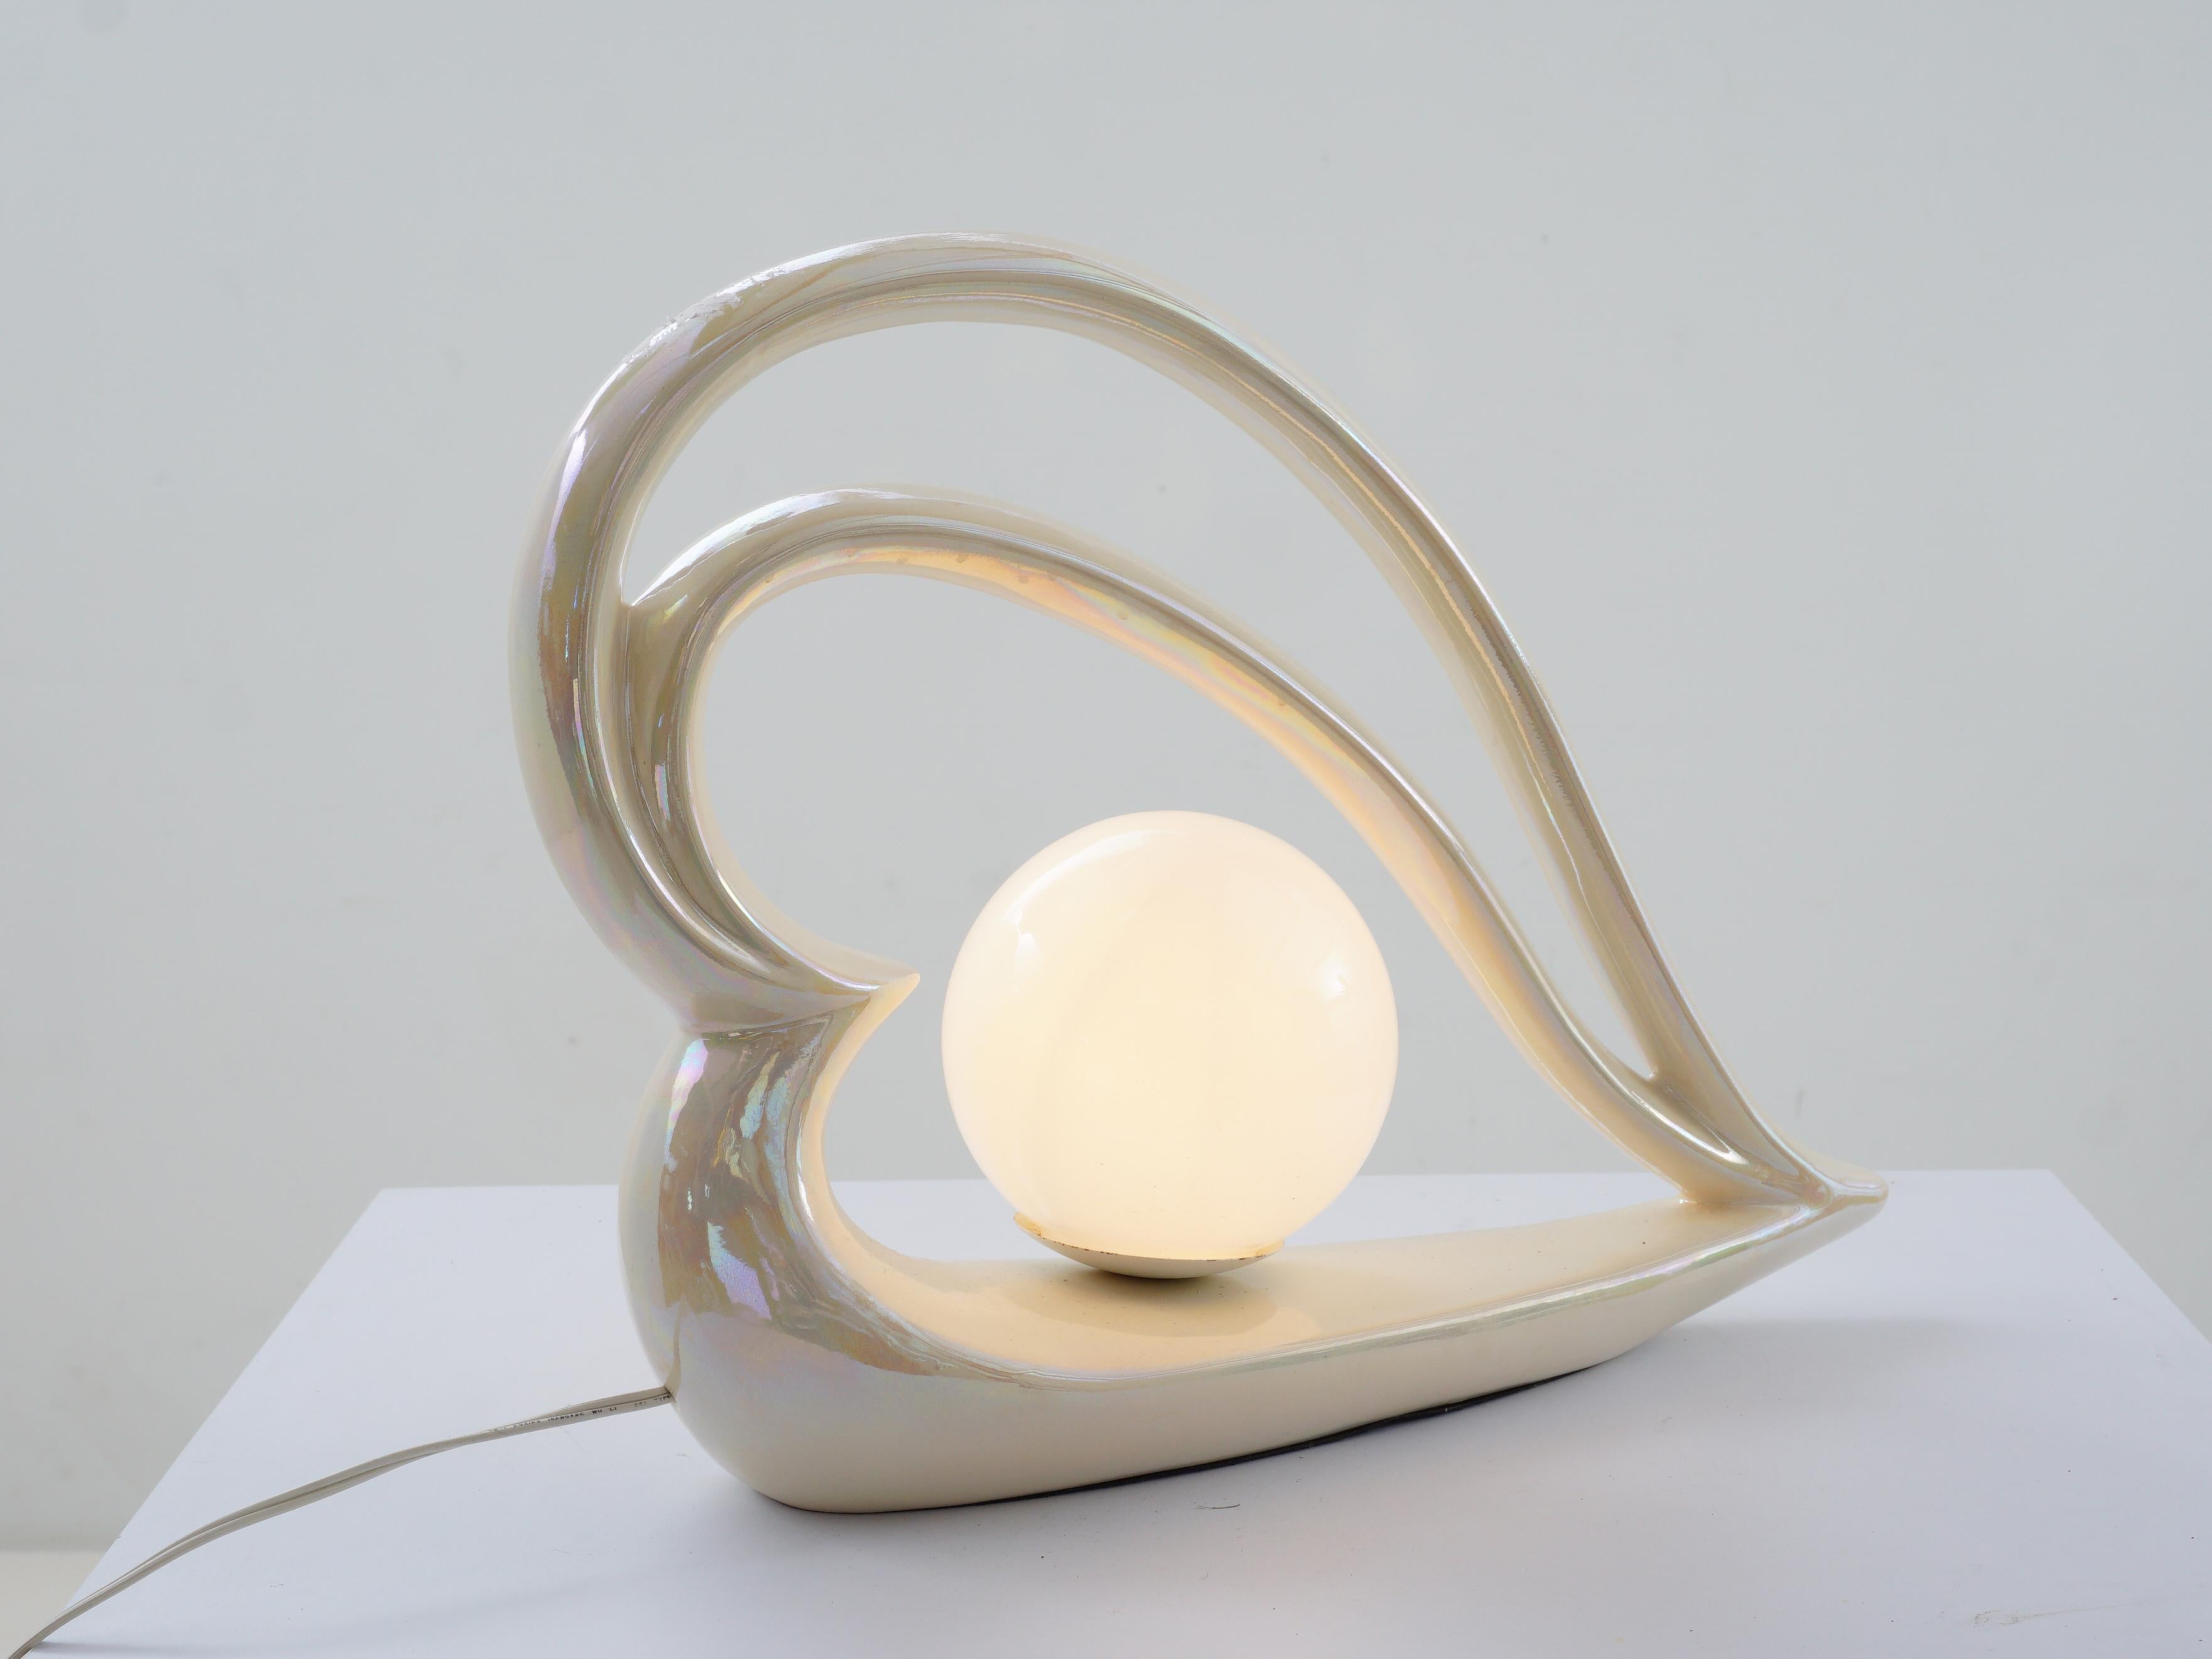 La lampe qui donnera à votre espace une dose de glam postmoderne ! Avec son éclat irisé, cette lampe de table à cœur en céramique n'est pas une simple source de lumière, c'est une œuvre d'art tout droit sortie d'un rêve des années 80.

- 14.25 